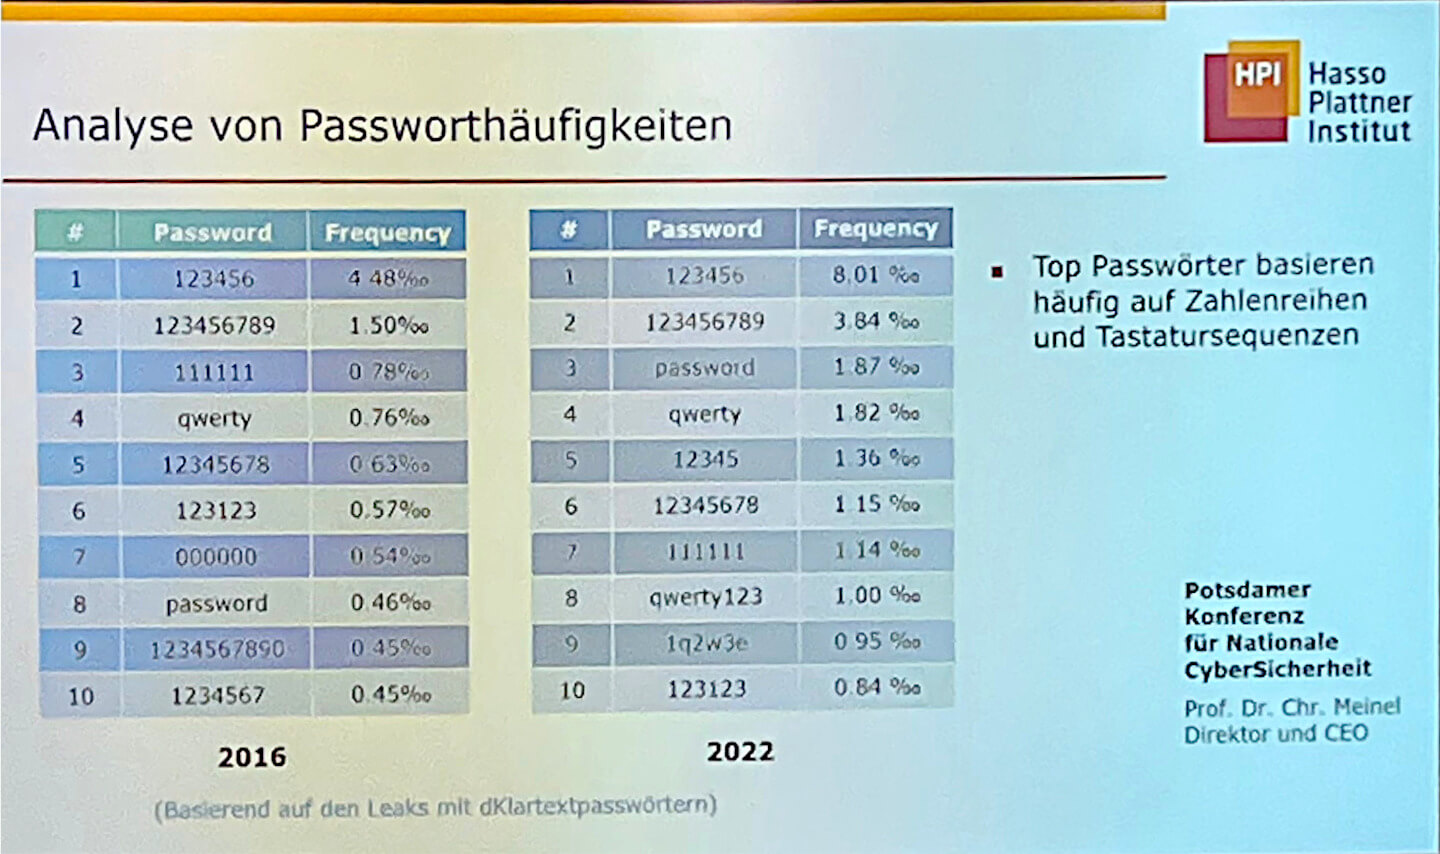 Analyse von Passworthäufigkeiten in den Jahren 2016 und 2022